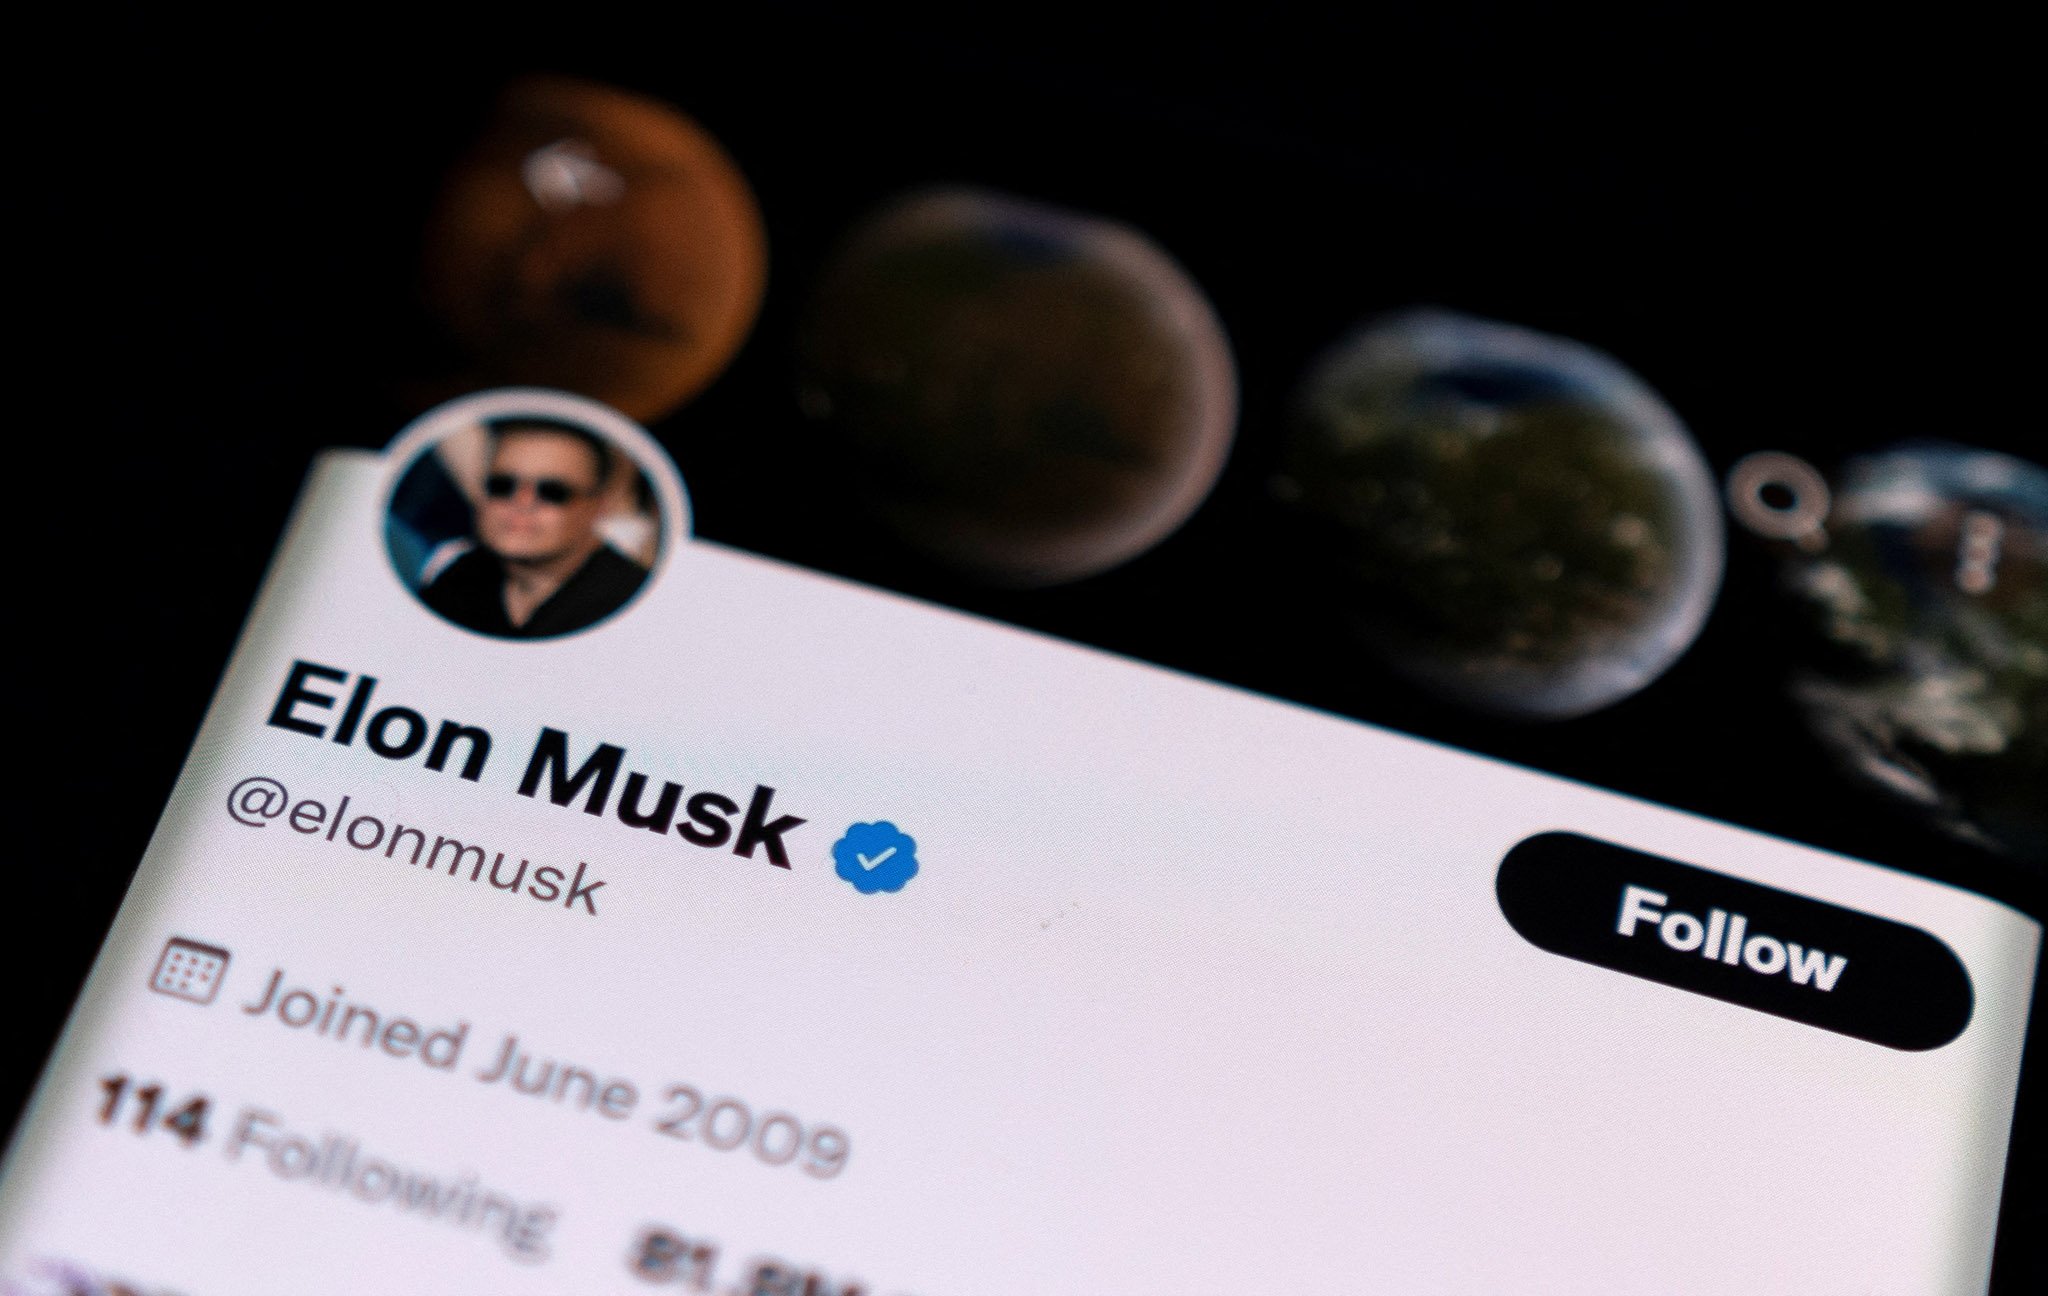 Twitter chính thức khởi kiện Elon Musk, yêu cầu tỷ phú này hoàn tất thương vụ 44 tỷ Đô